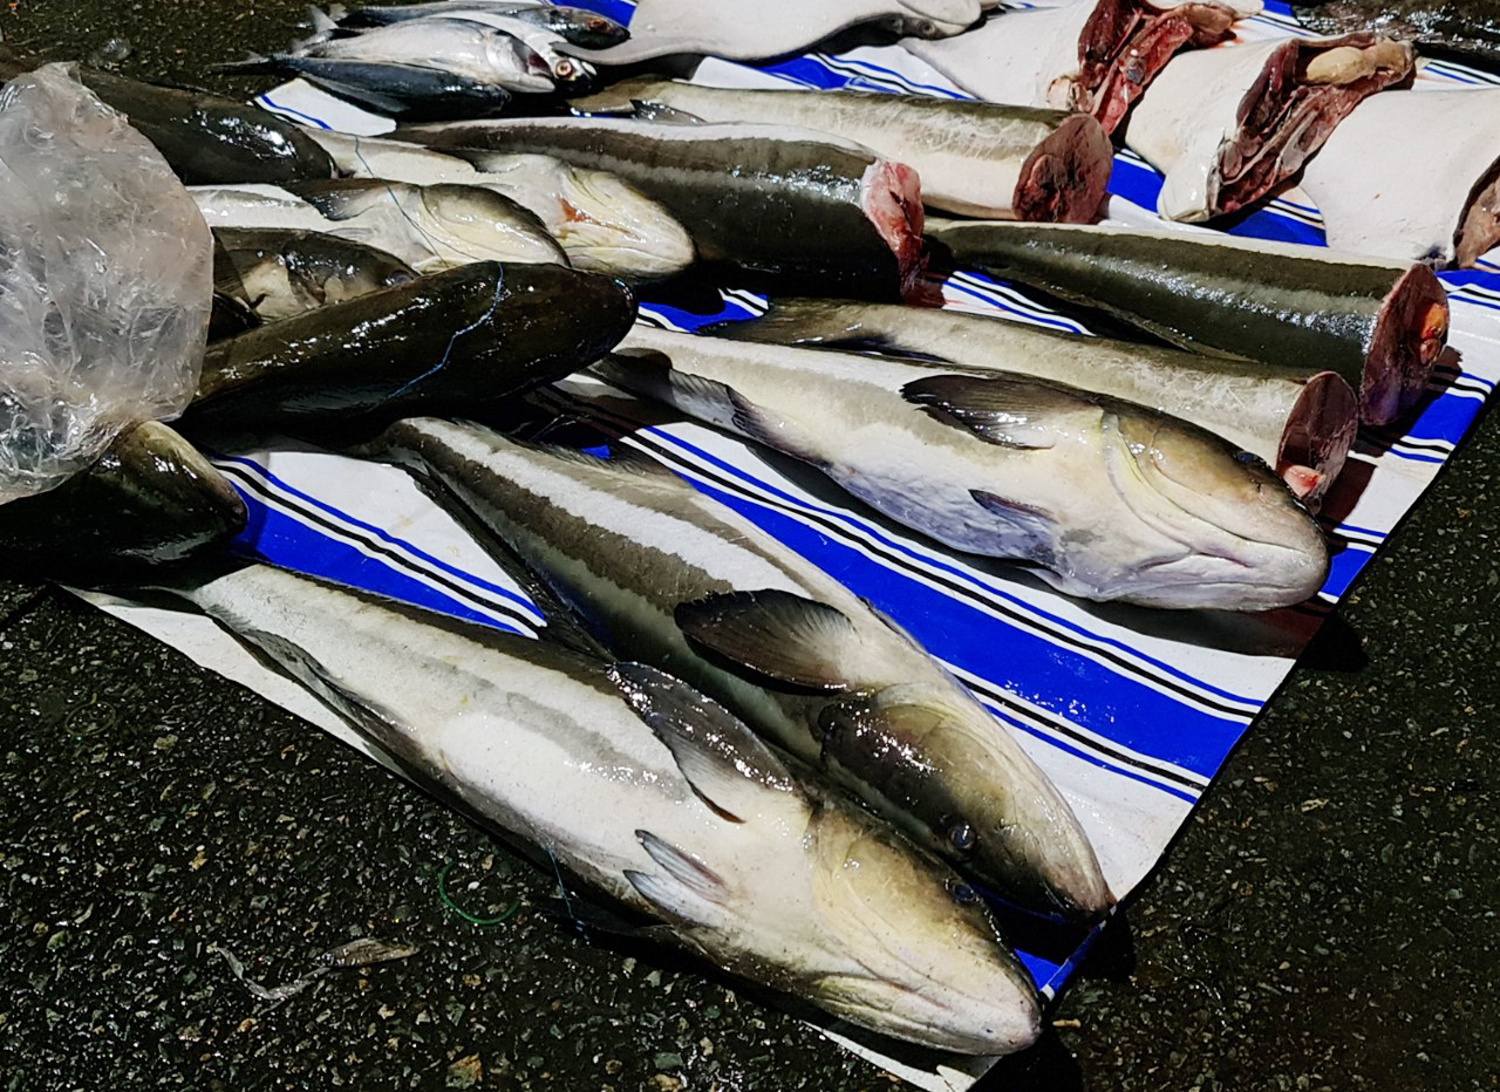 Du khách nườm nượp đến chợ Hà Tiên mua cá, mực lúc rạng sáng - 6